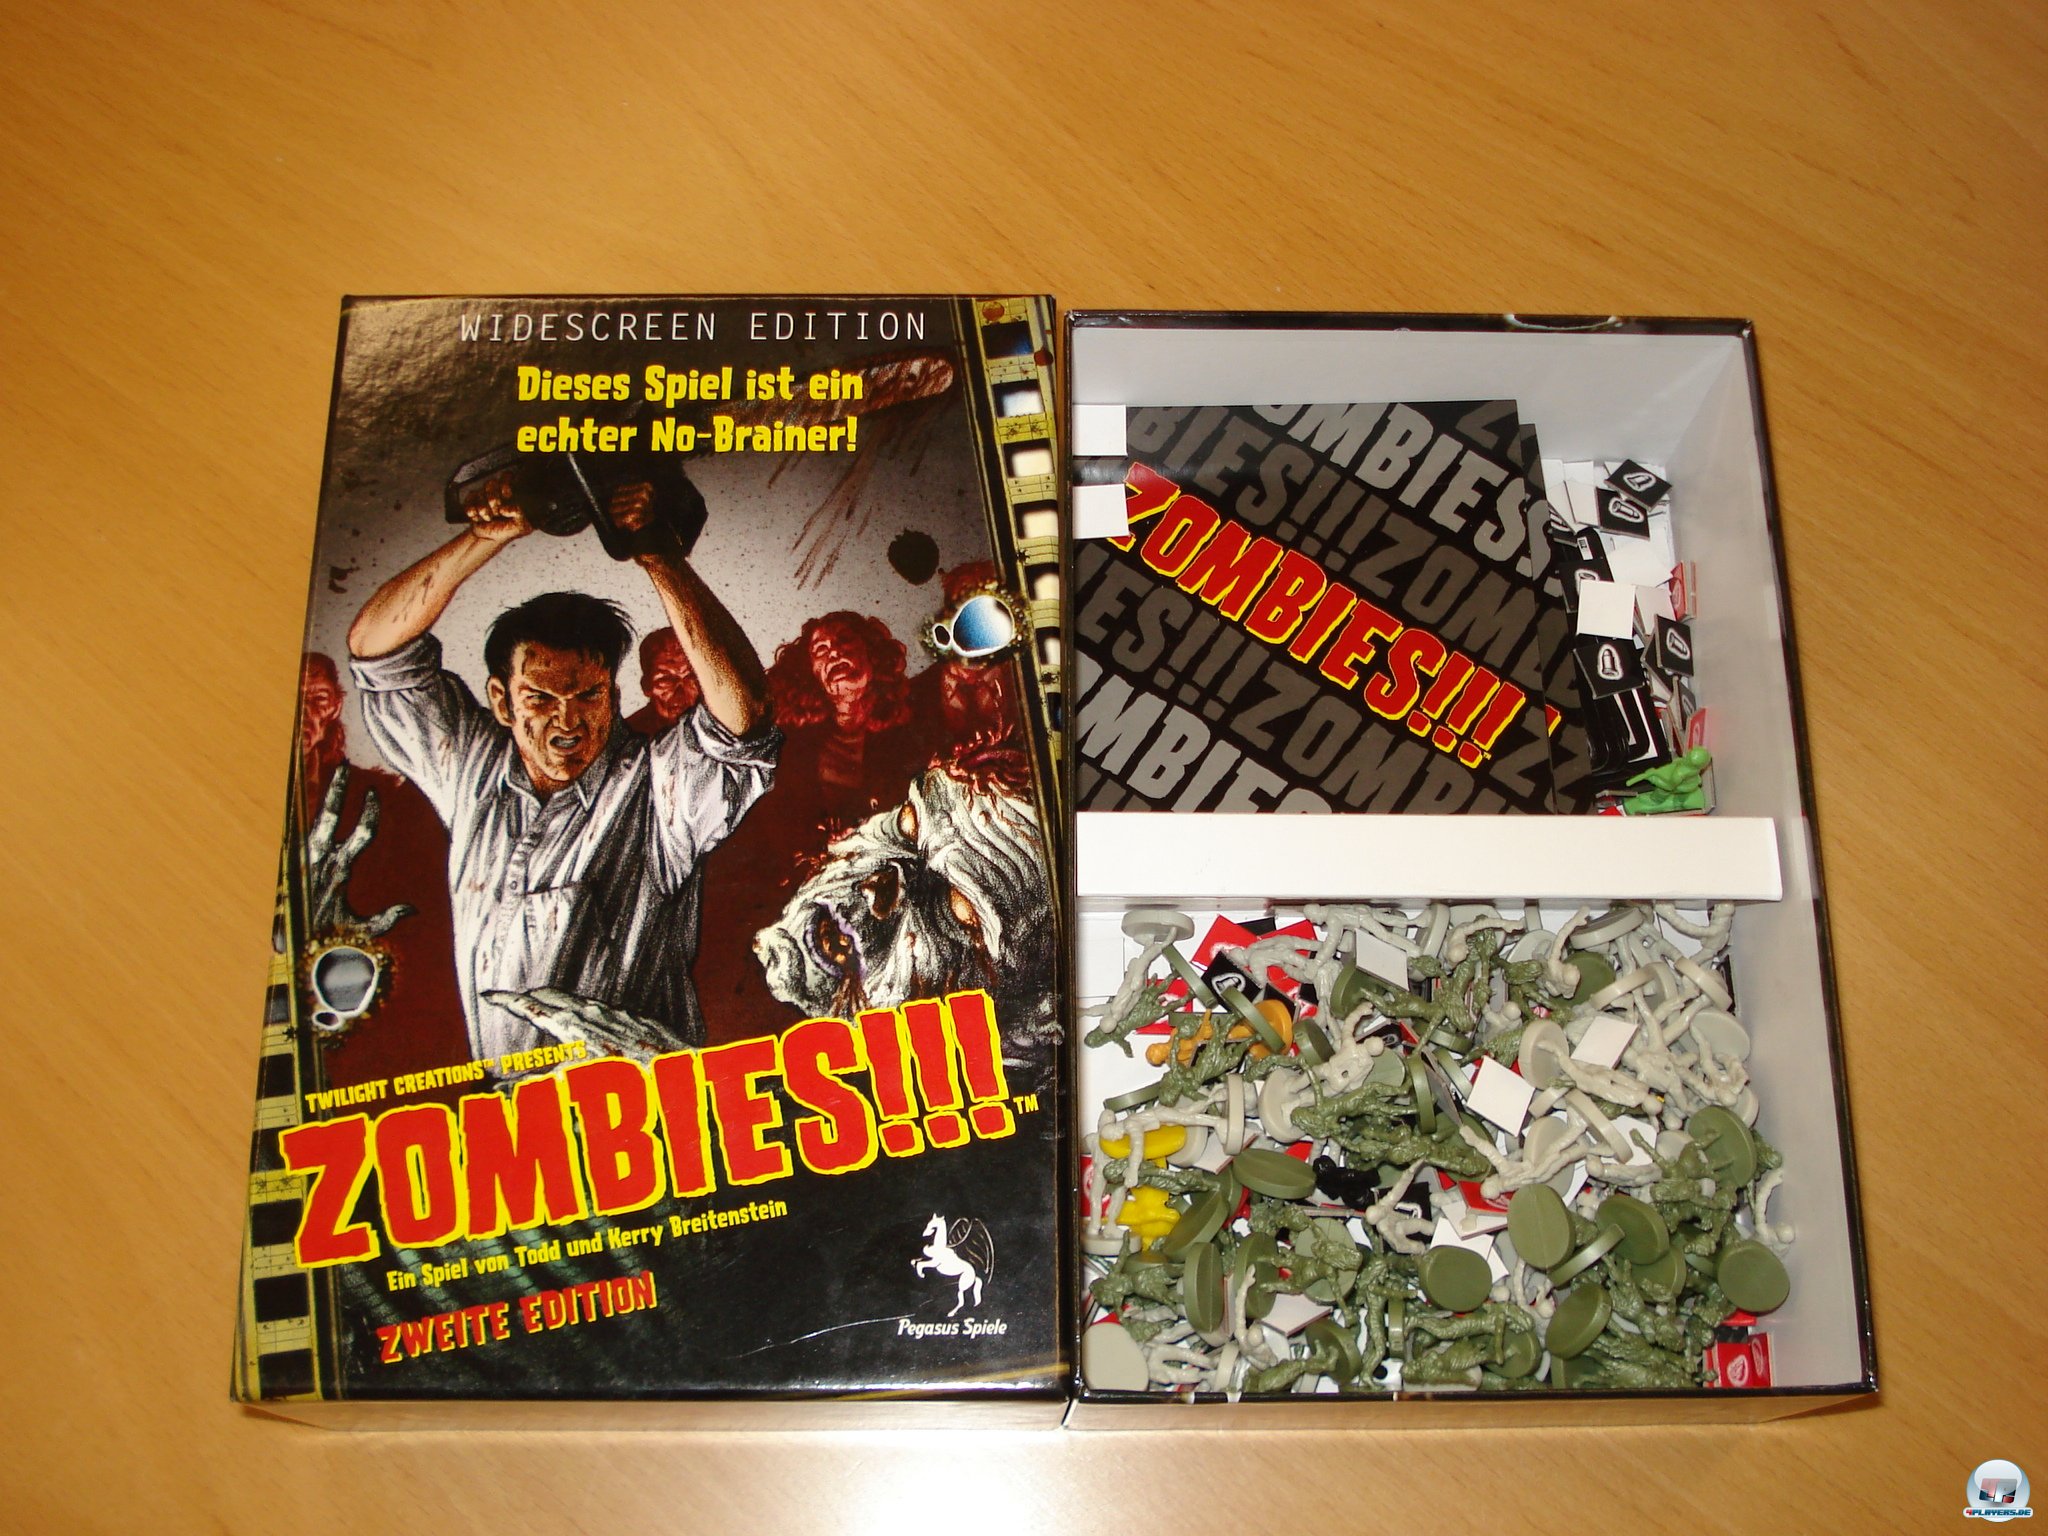 Zombies!!! ist in deutscher Version bei Pegasus für 2 bis 6 Spieler erschienen und kostet knapp 15 Euro.